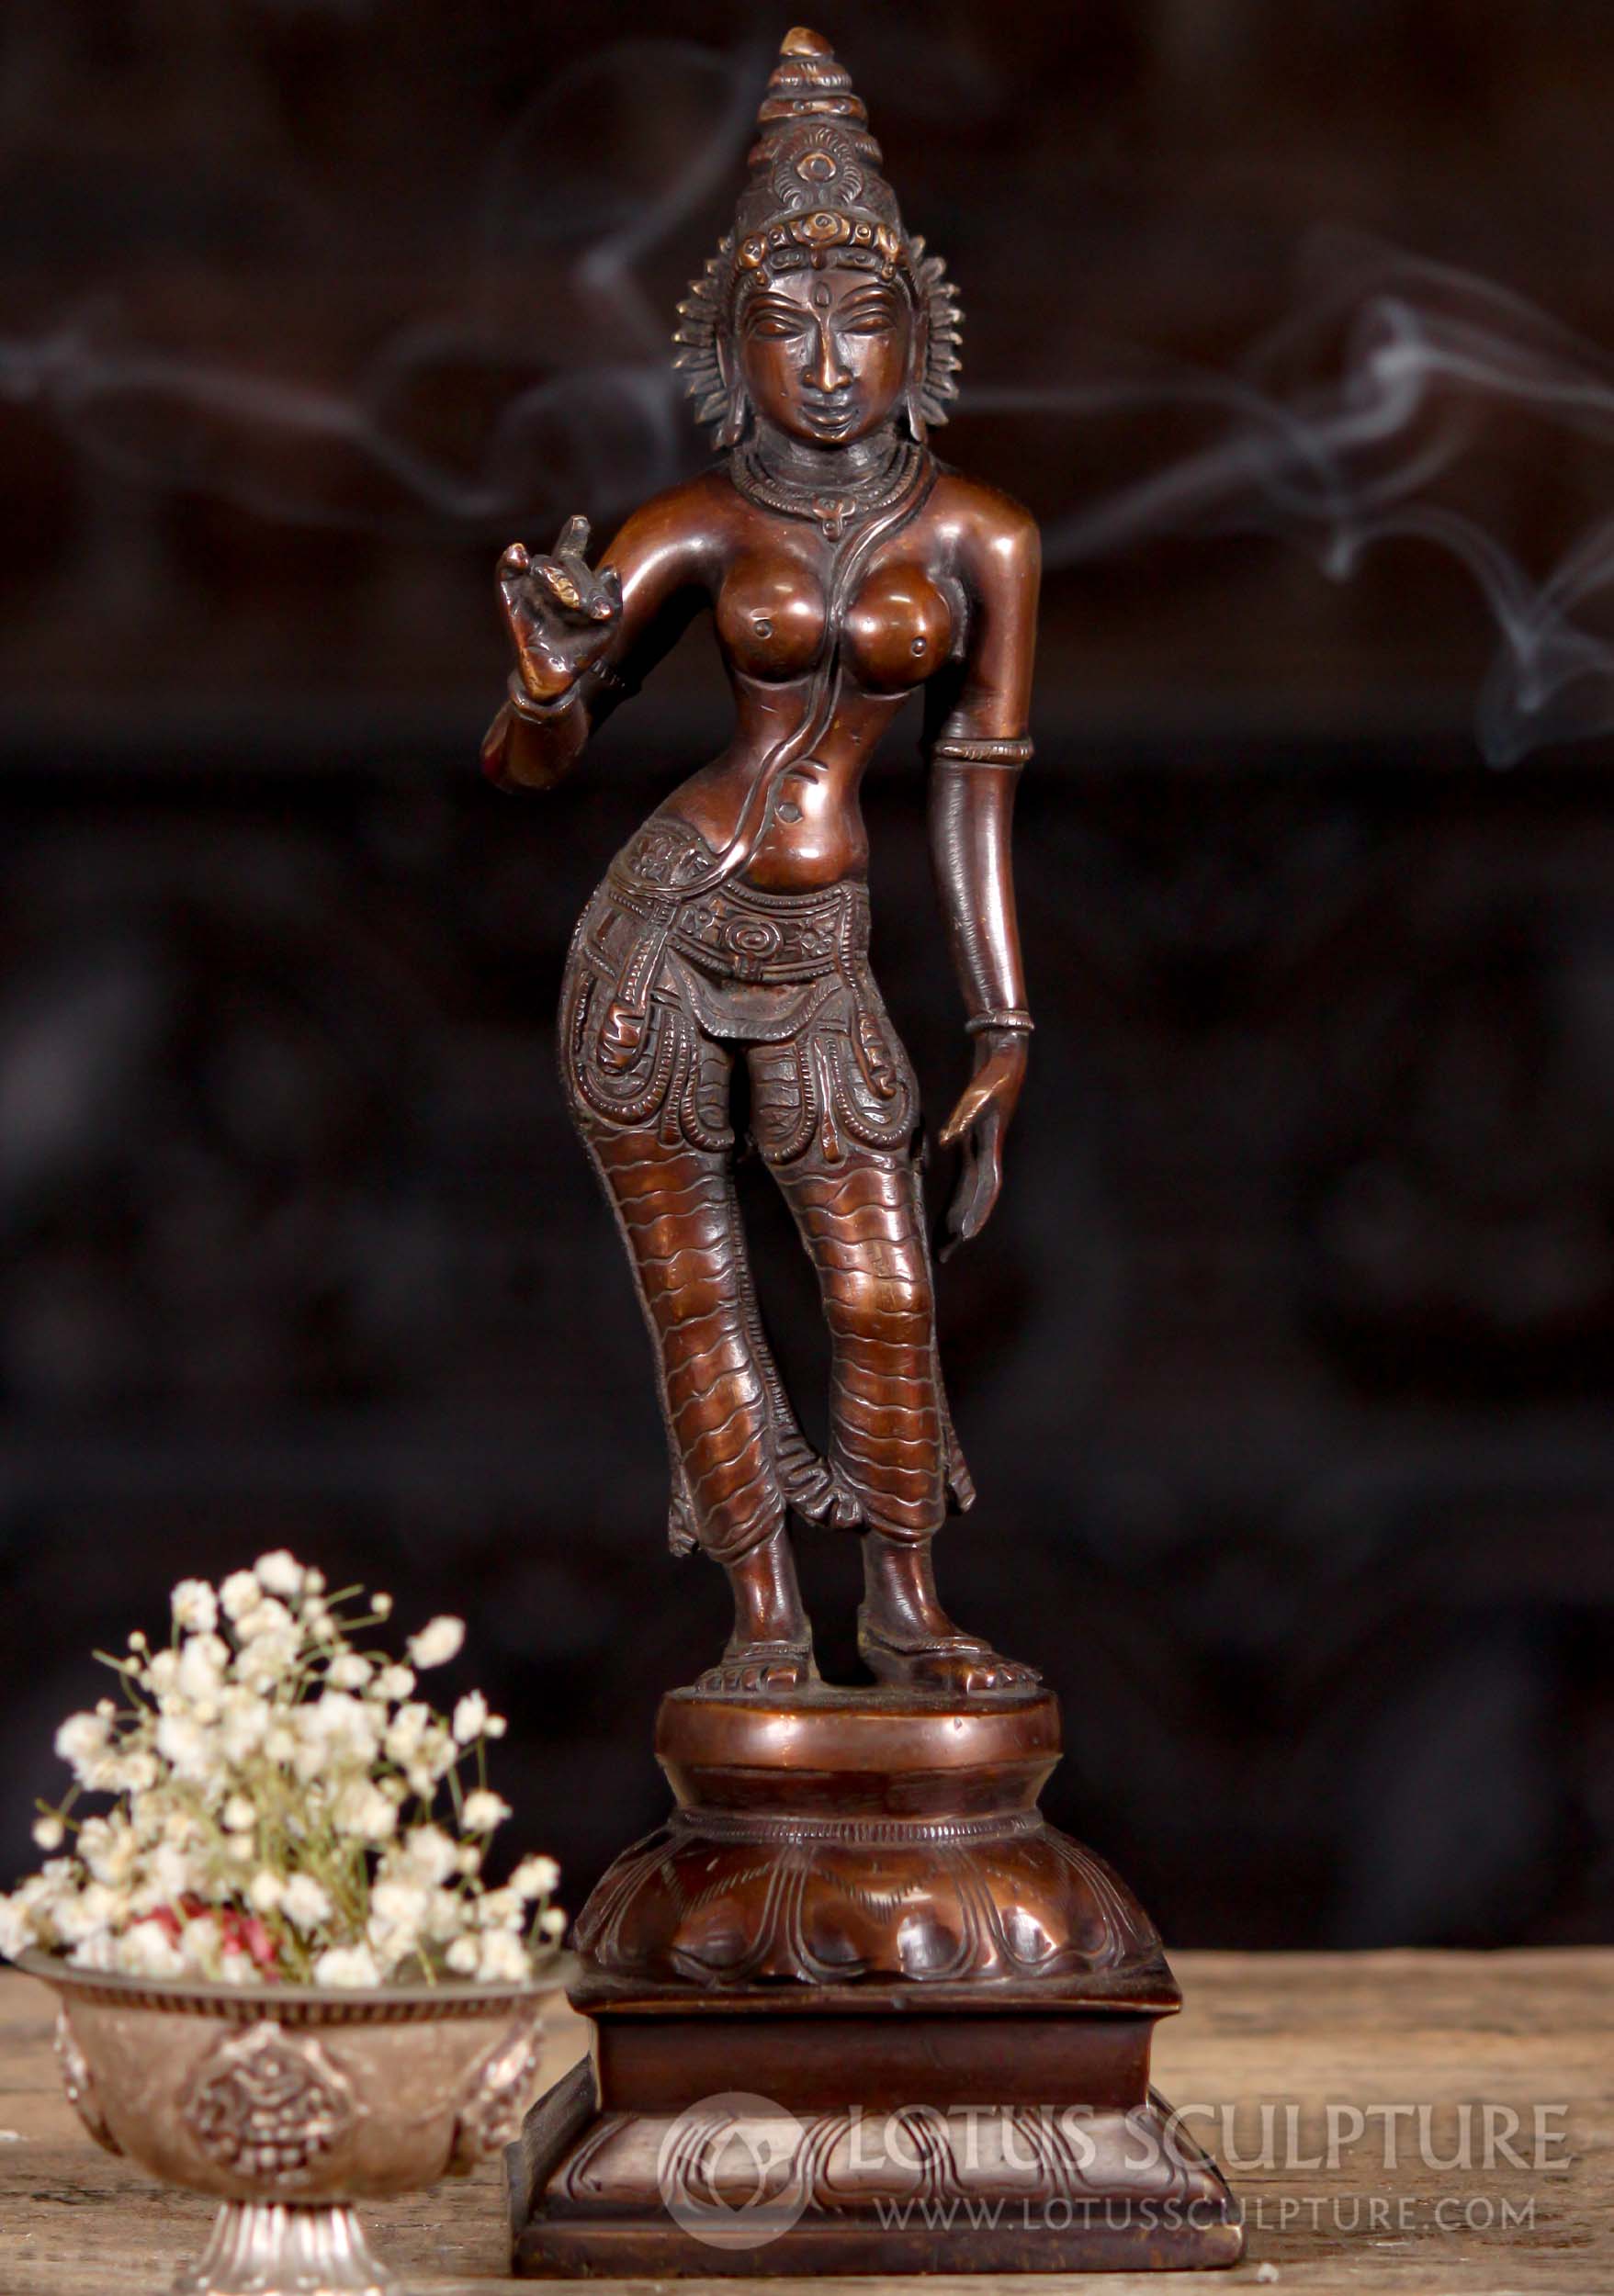 https://www.lotussculpture.com/mm5/graphics/00000001/52/1-antique-copper-standing-parvati-as-shivakami-statue-hindu-brass-c.jpg